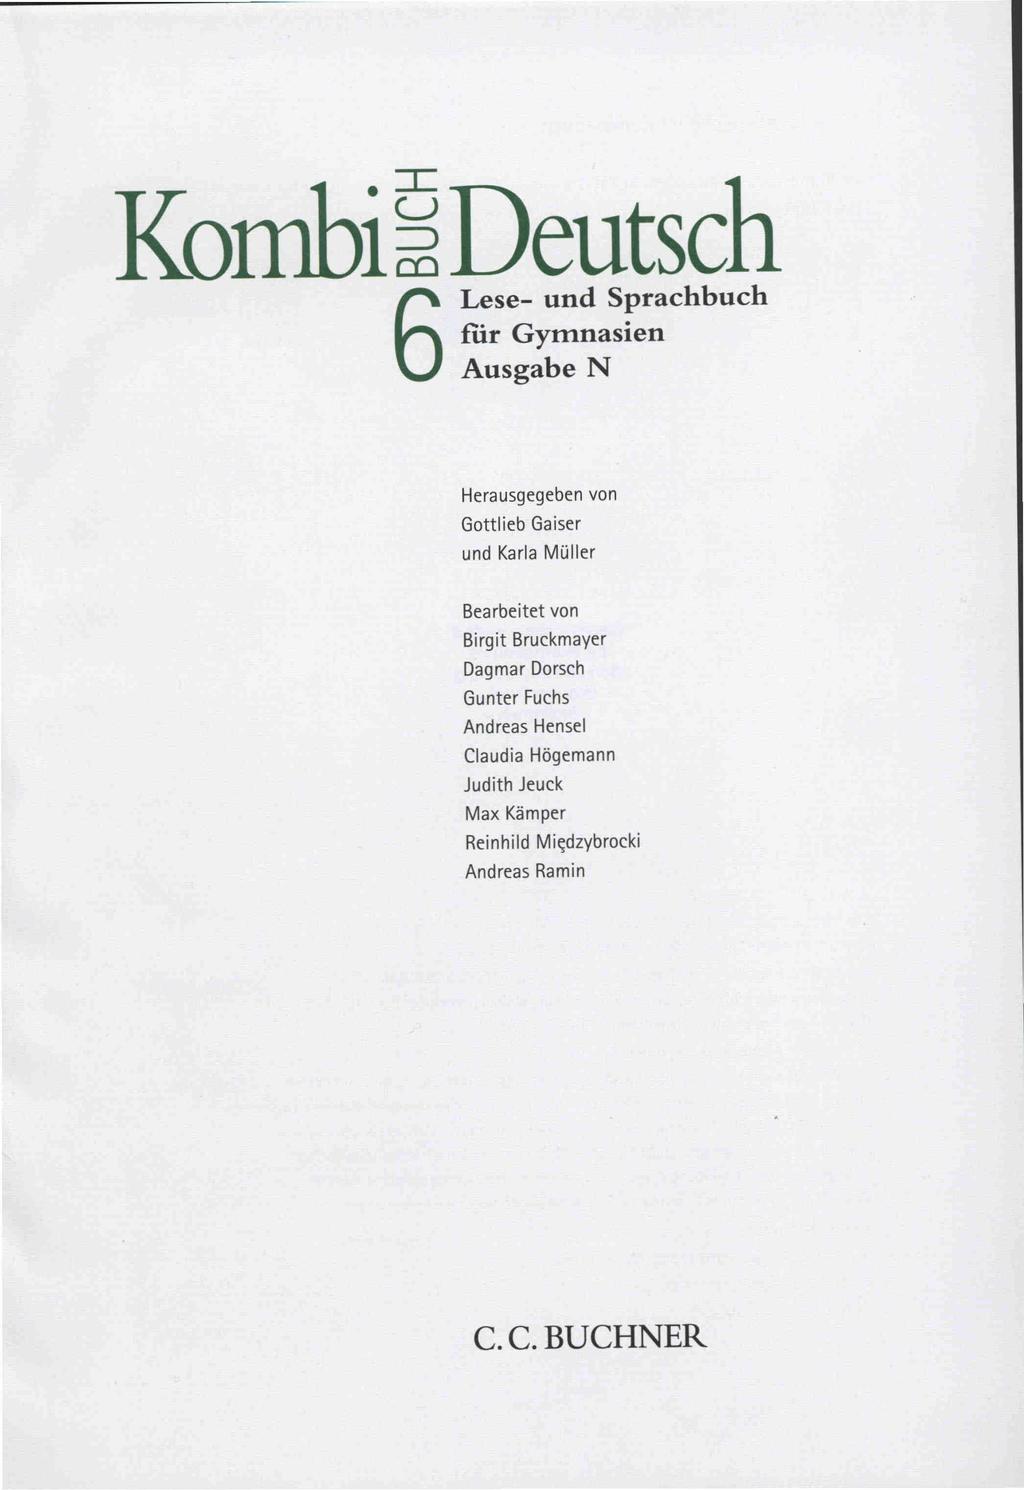 Kombi~Deutsch 6Lese- und Sprachbuch CurGymnasien Ausgabe N Herausgegeben von Gottlieb Gaiser und Karla Müller Bearbeitet von Birgit